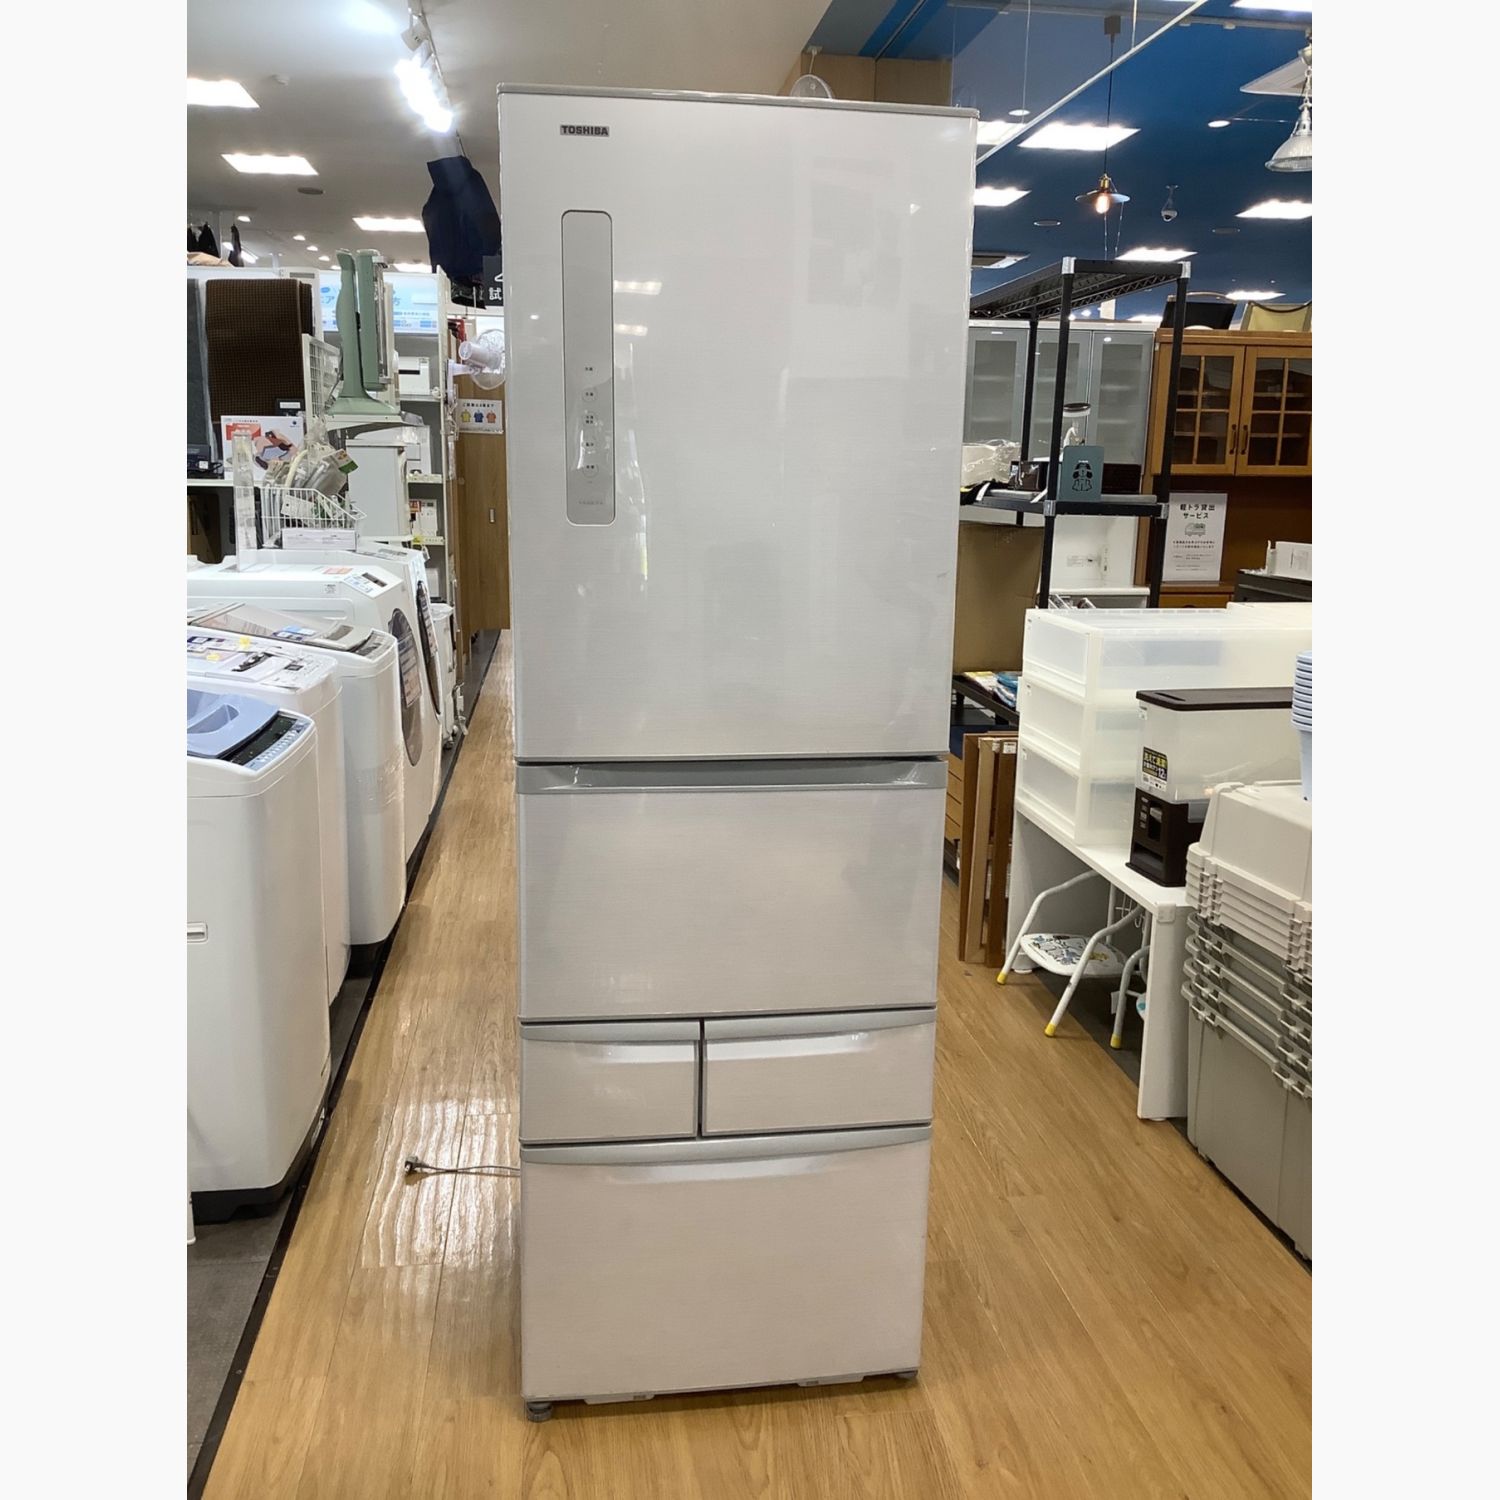 東芝 5ドア冷蔵庫 2012年製 GR-E43G - キッチン家電